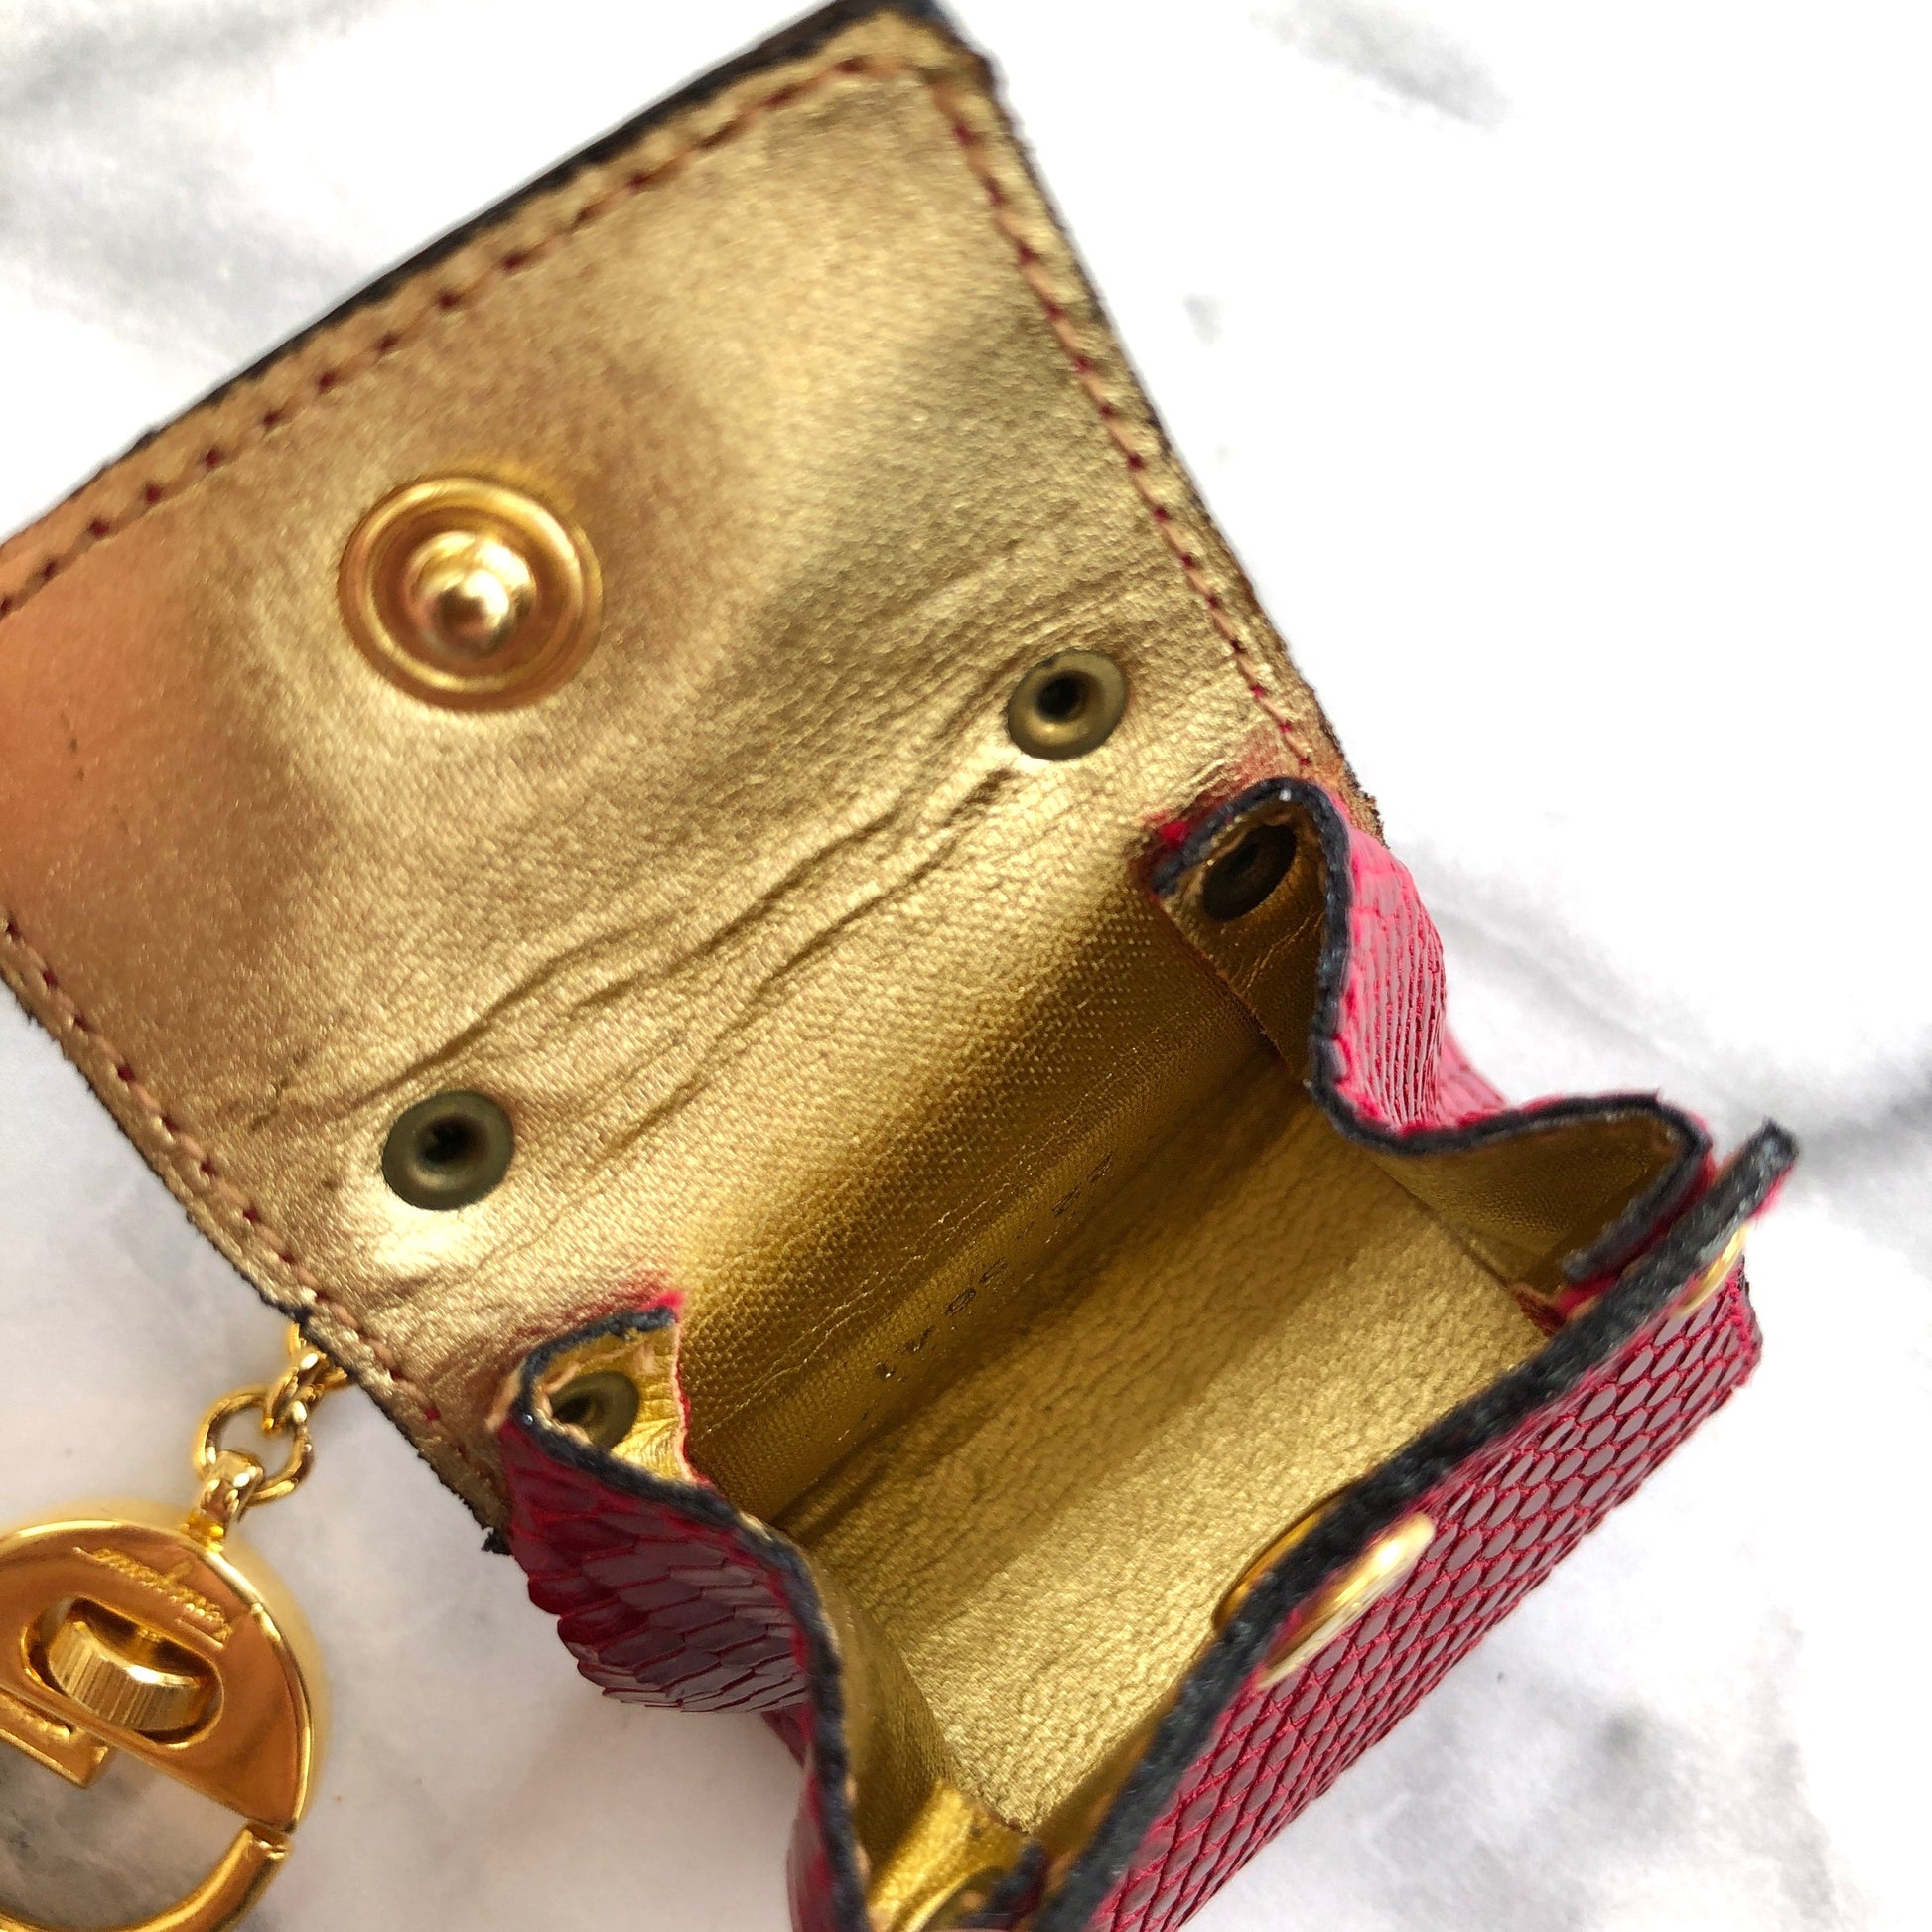 gucci key holder vintage